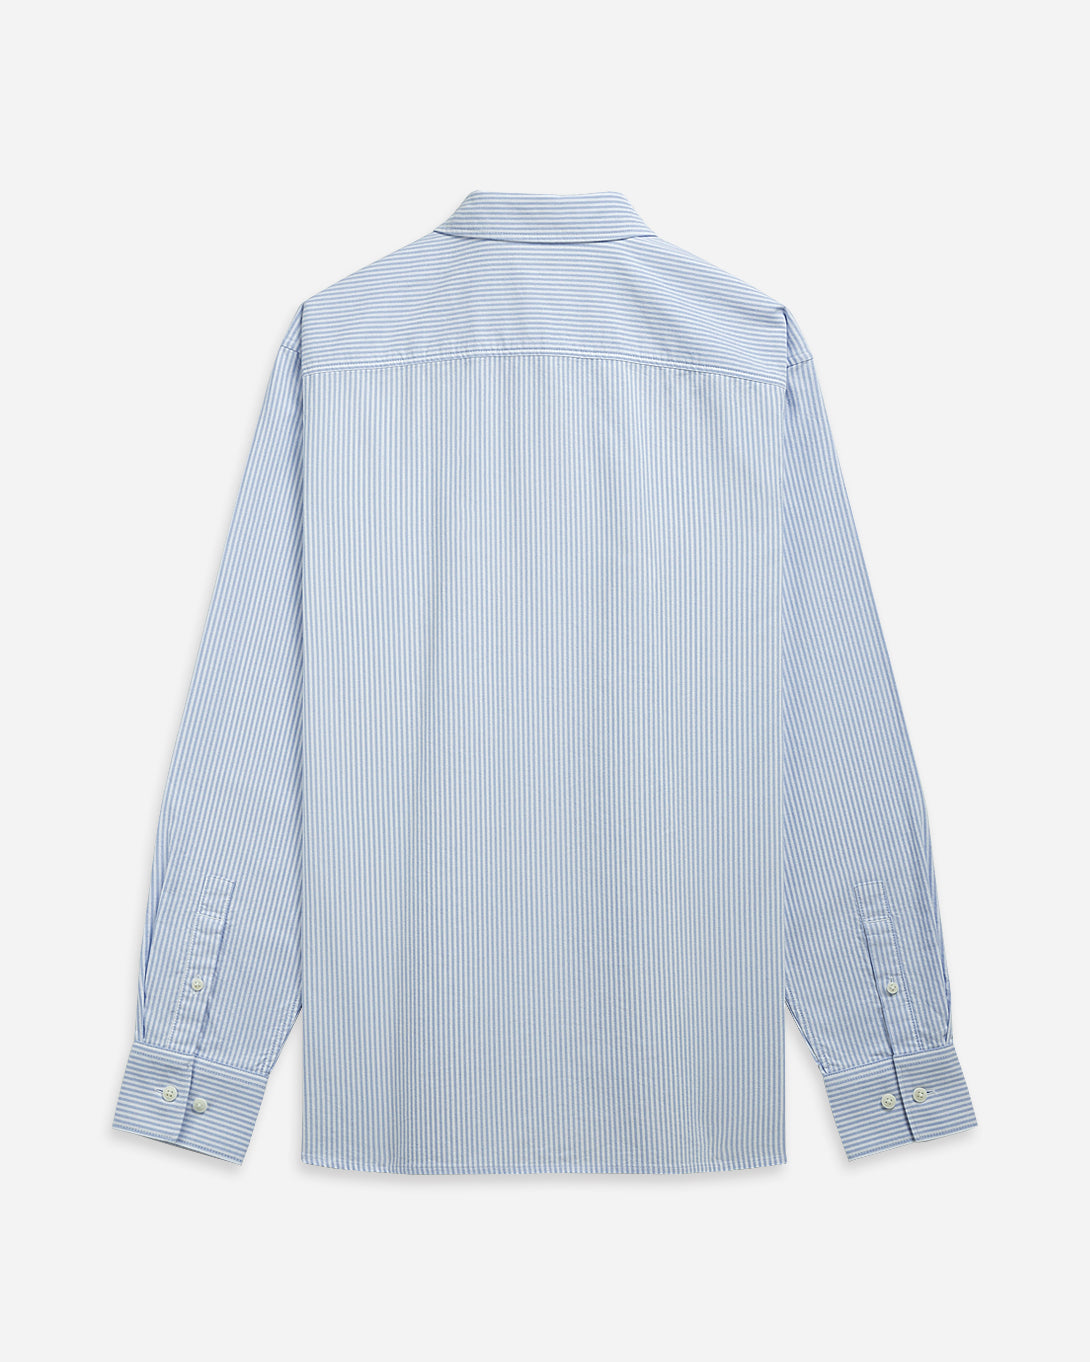 LAVENDER BLUE/WHITE STRIPE Vance Stripe Oxford Shirt Mens Button Down Pocket Shirt